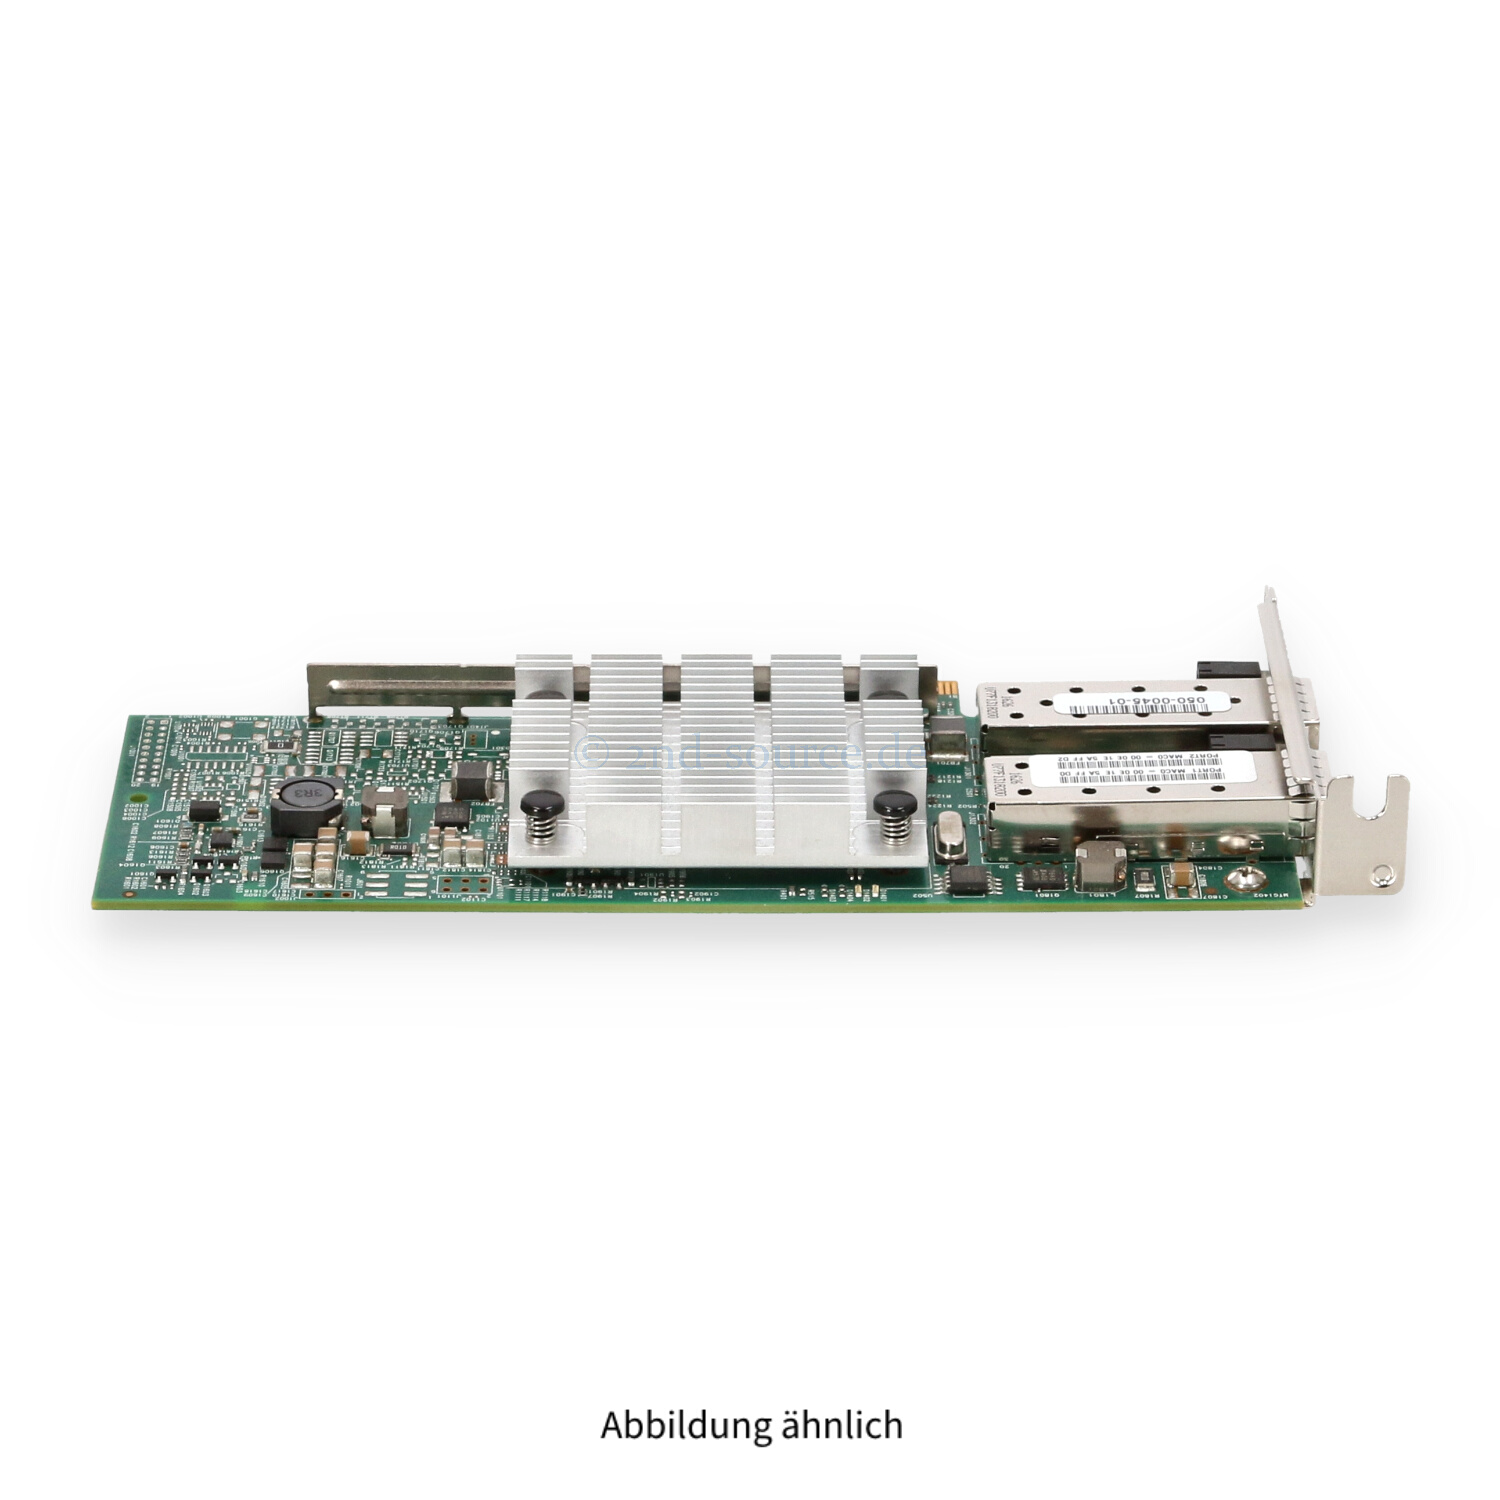 EMC Broadcom 957810A 2x 10GB SFP+ PCIe x8 Server Ethernet Adapter Low Profile 050-0045-01 BC0210406-01